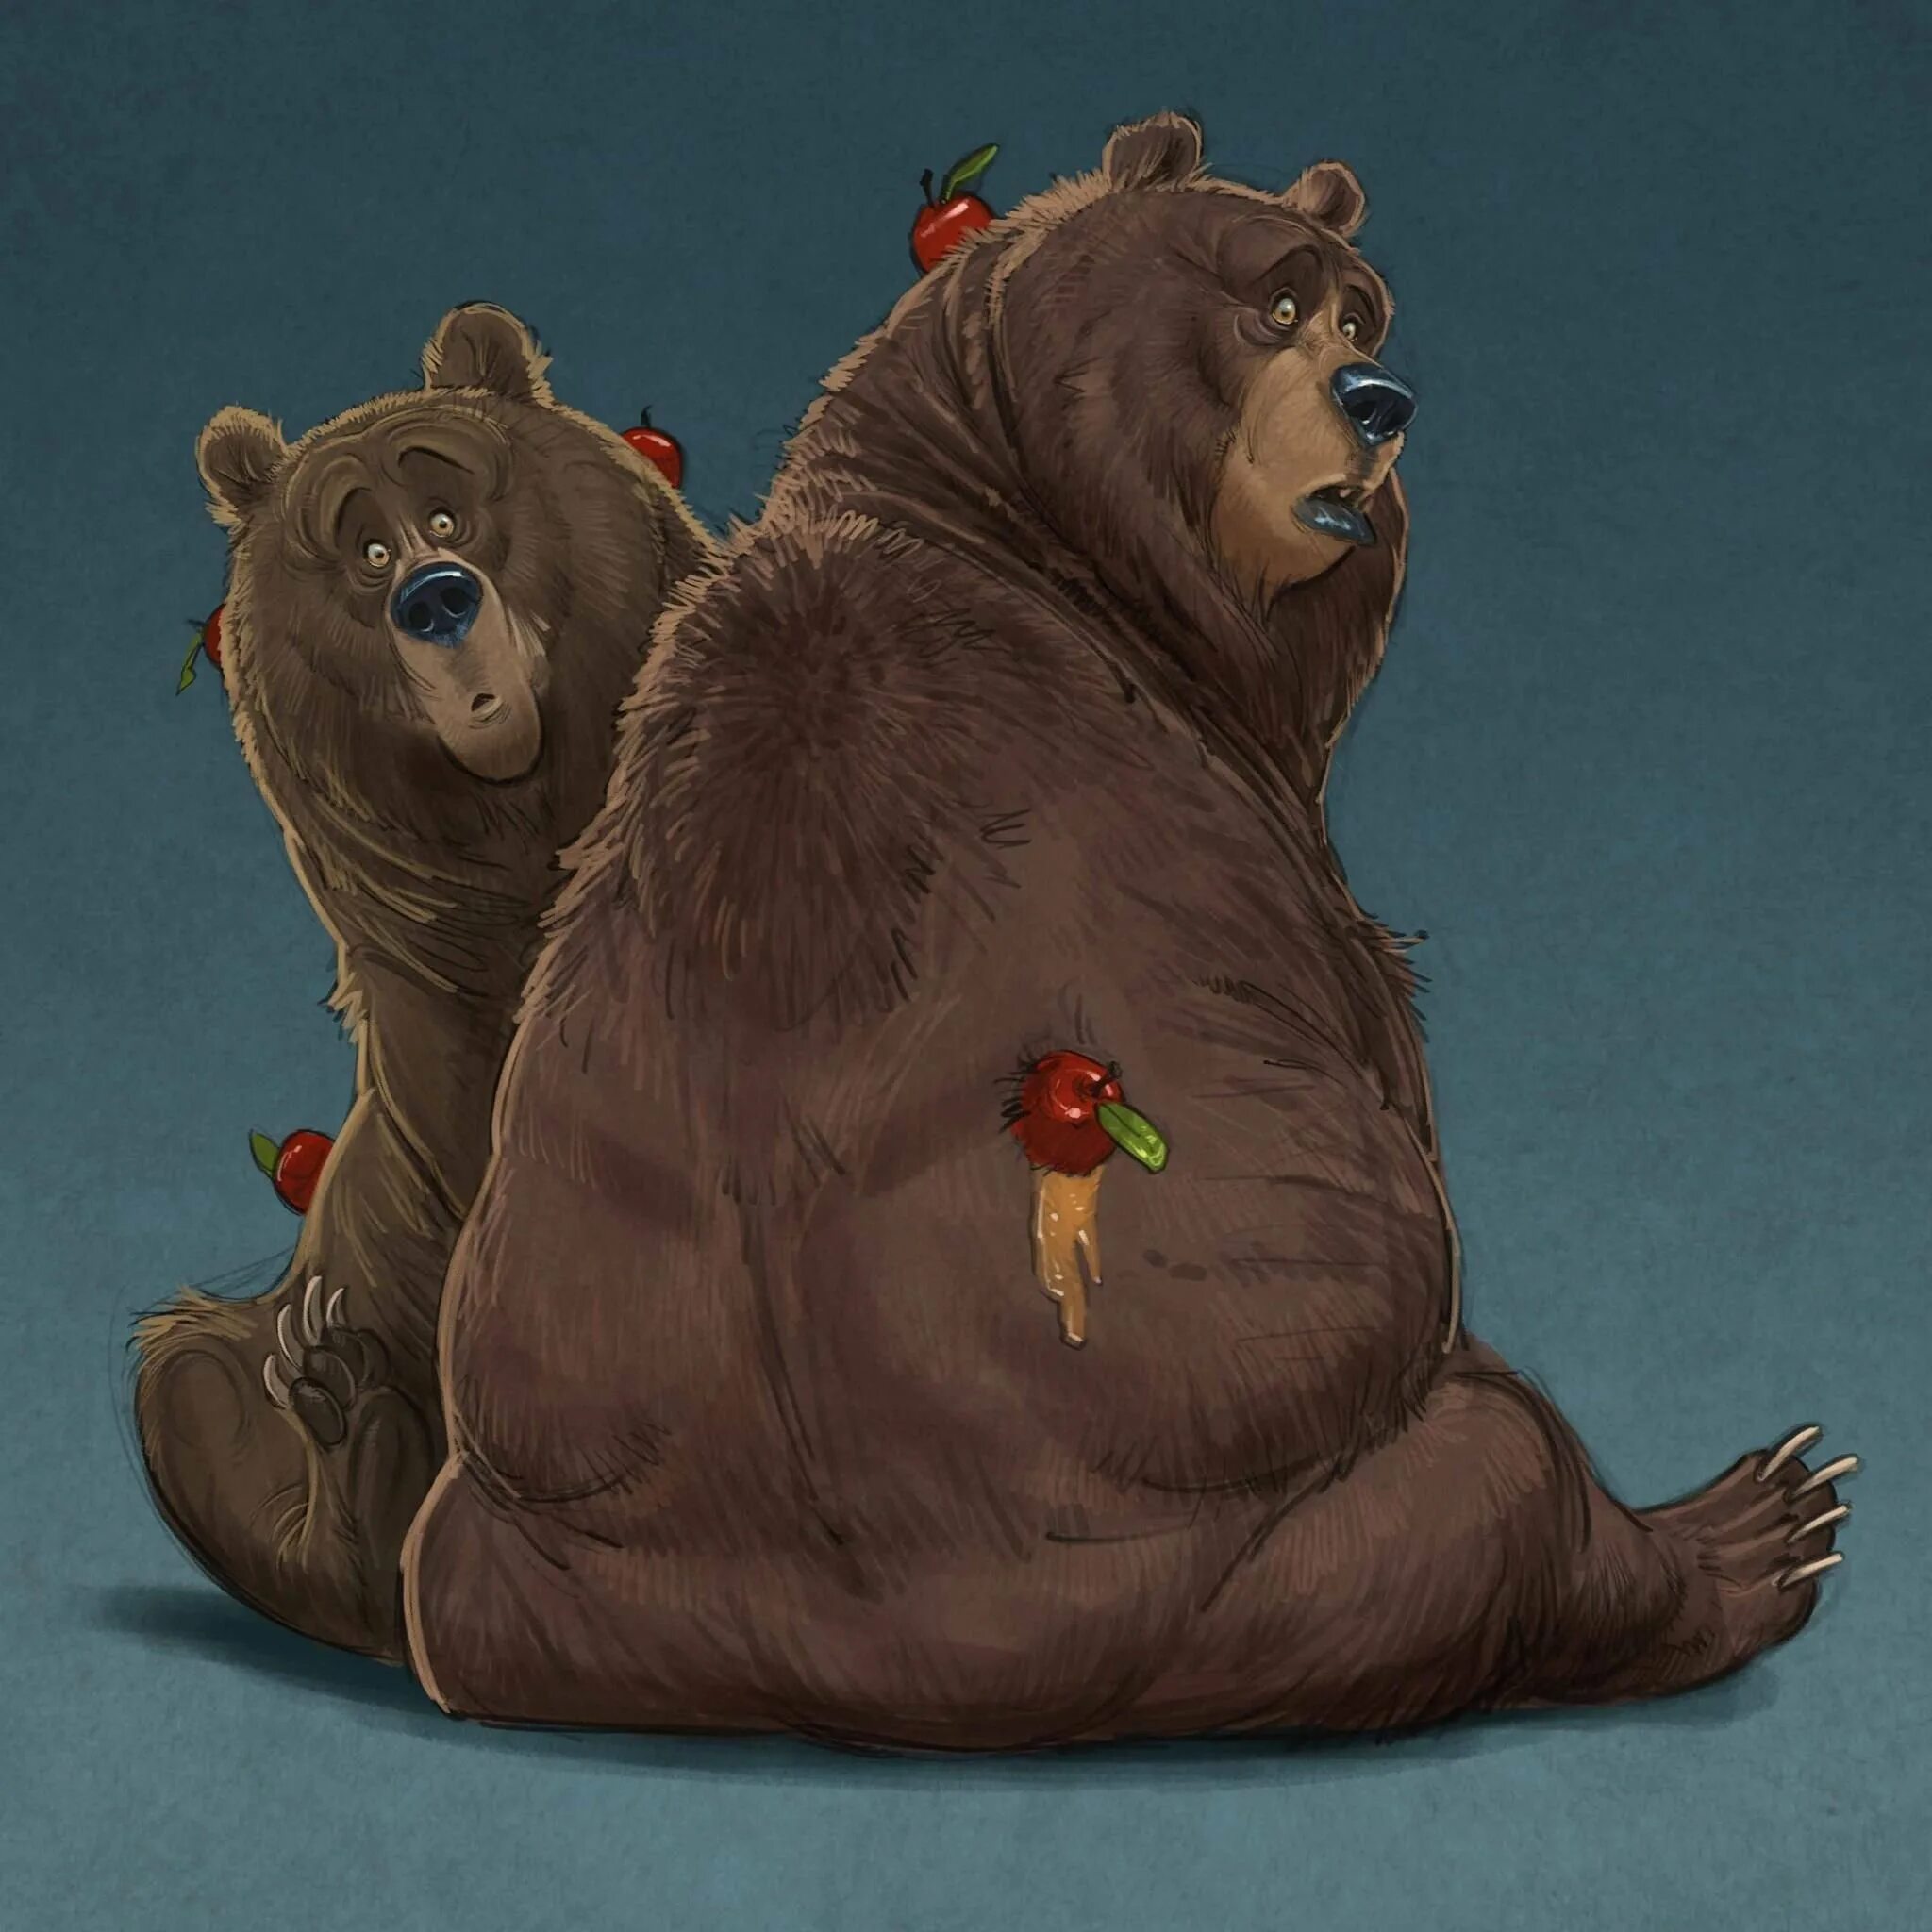 Aaron Blaise медведь. Медведь арты. Толстый медведь. Медвежонок арт. Украсть медведя